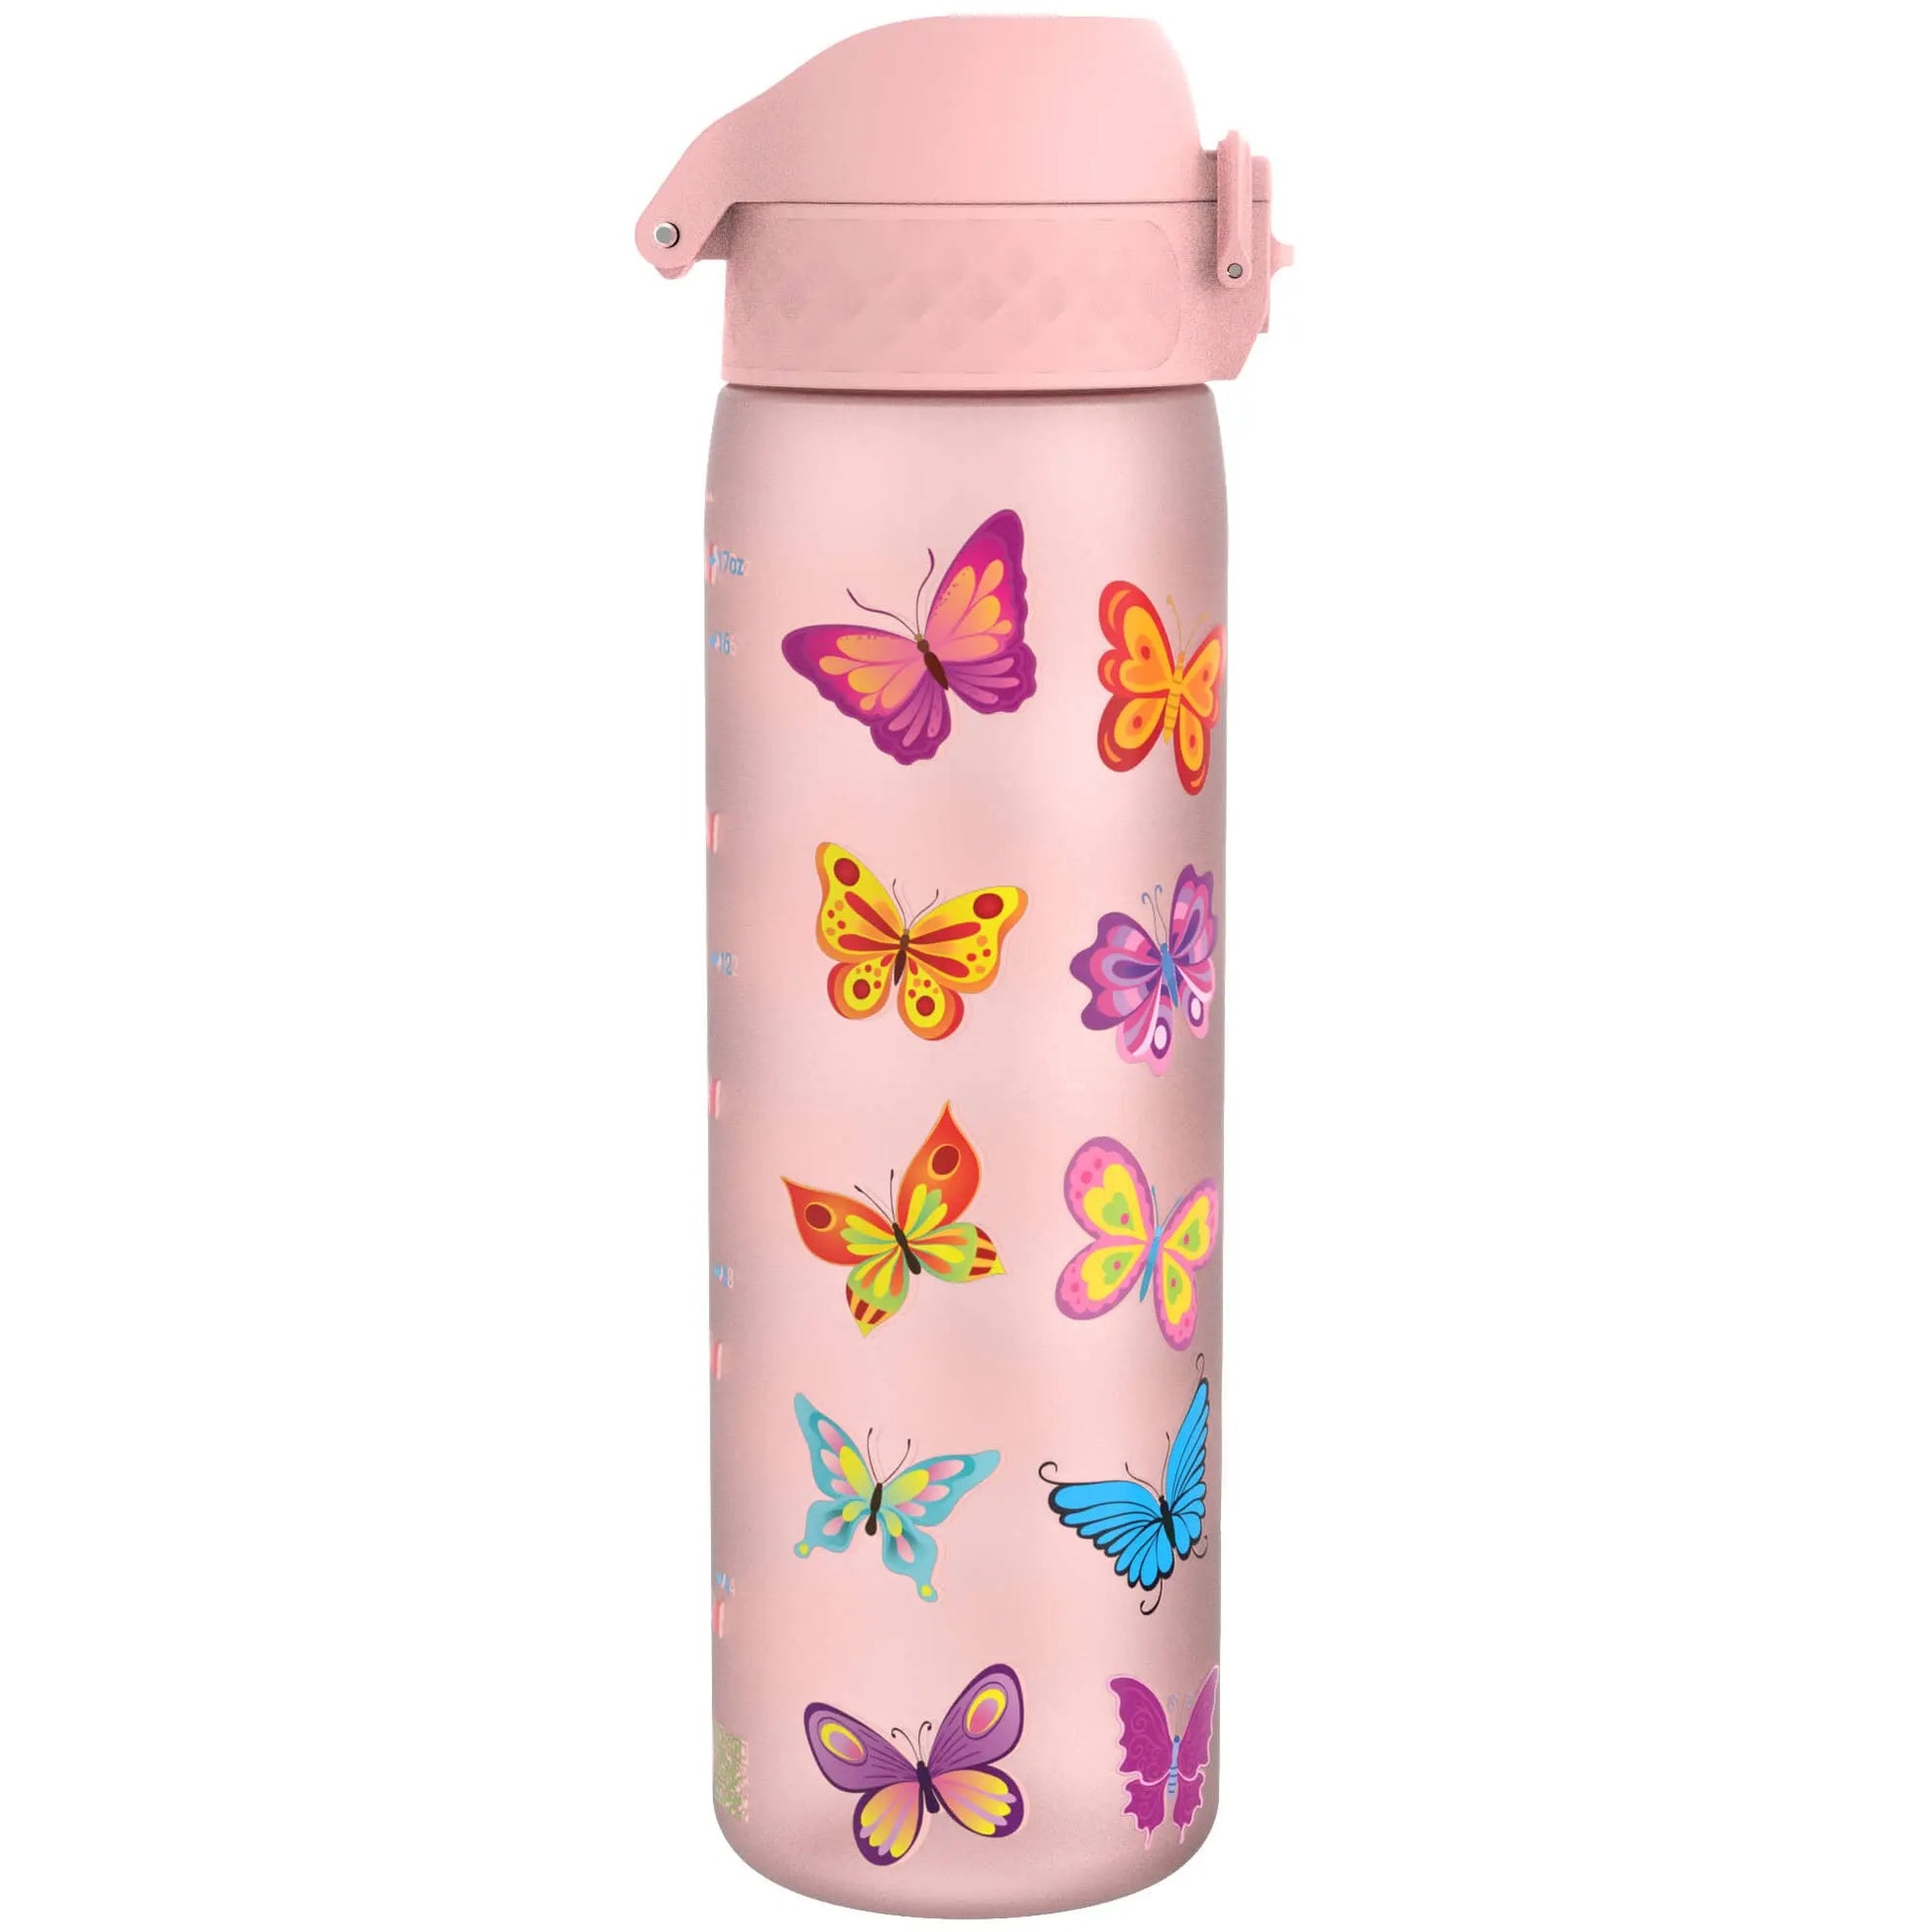 Leak Proof Slim Water Bottle, Recyclon™, Butterfly, 500ml (18oz) Ion8